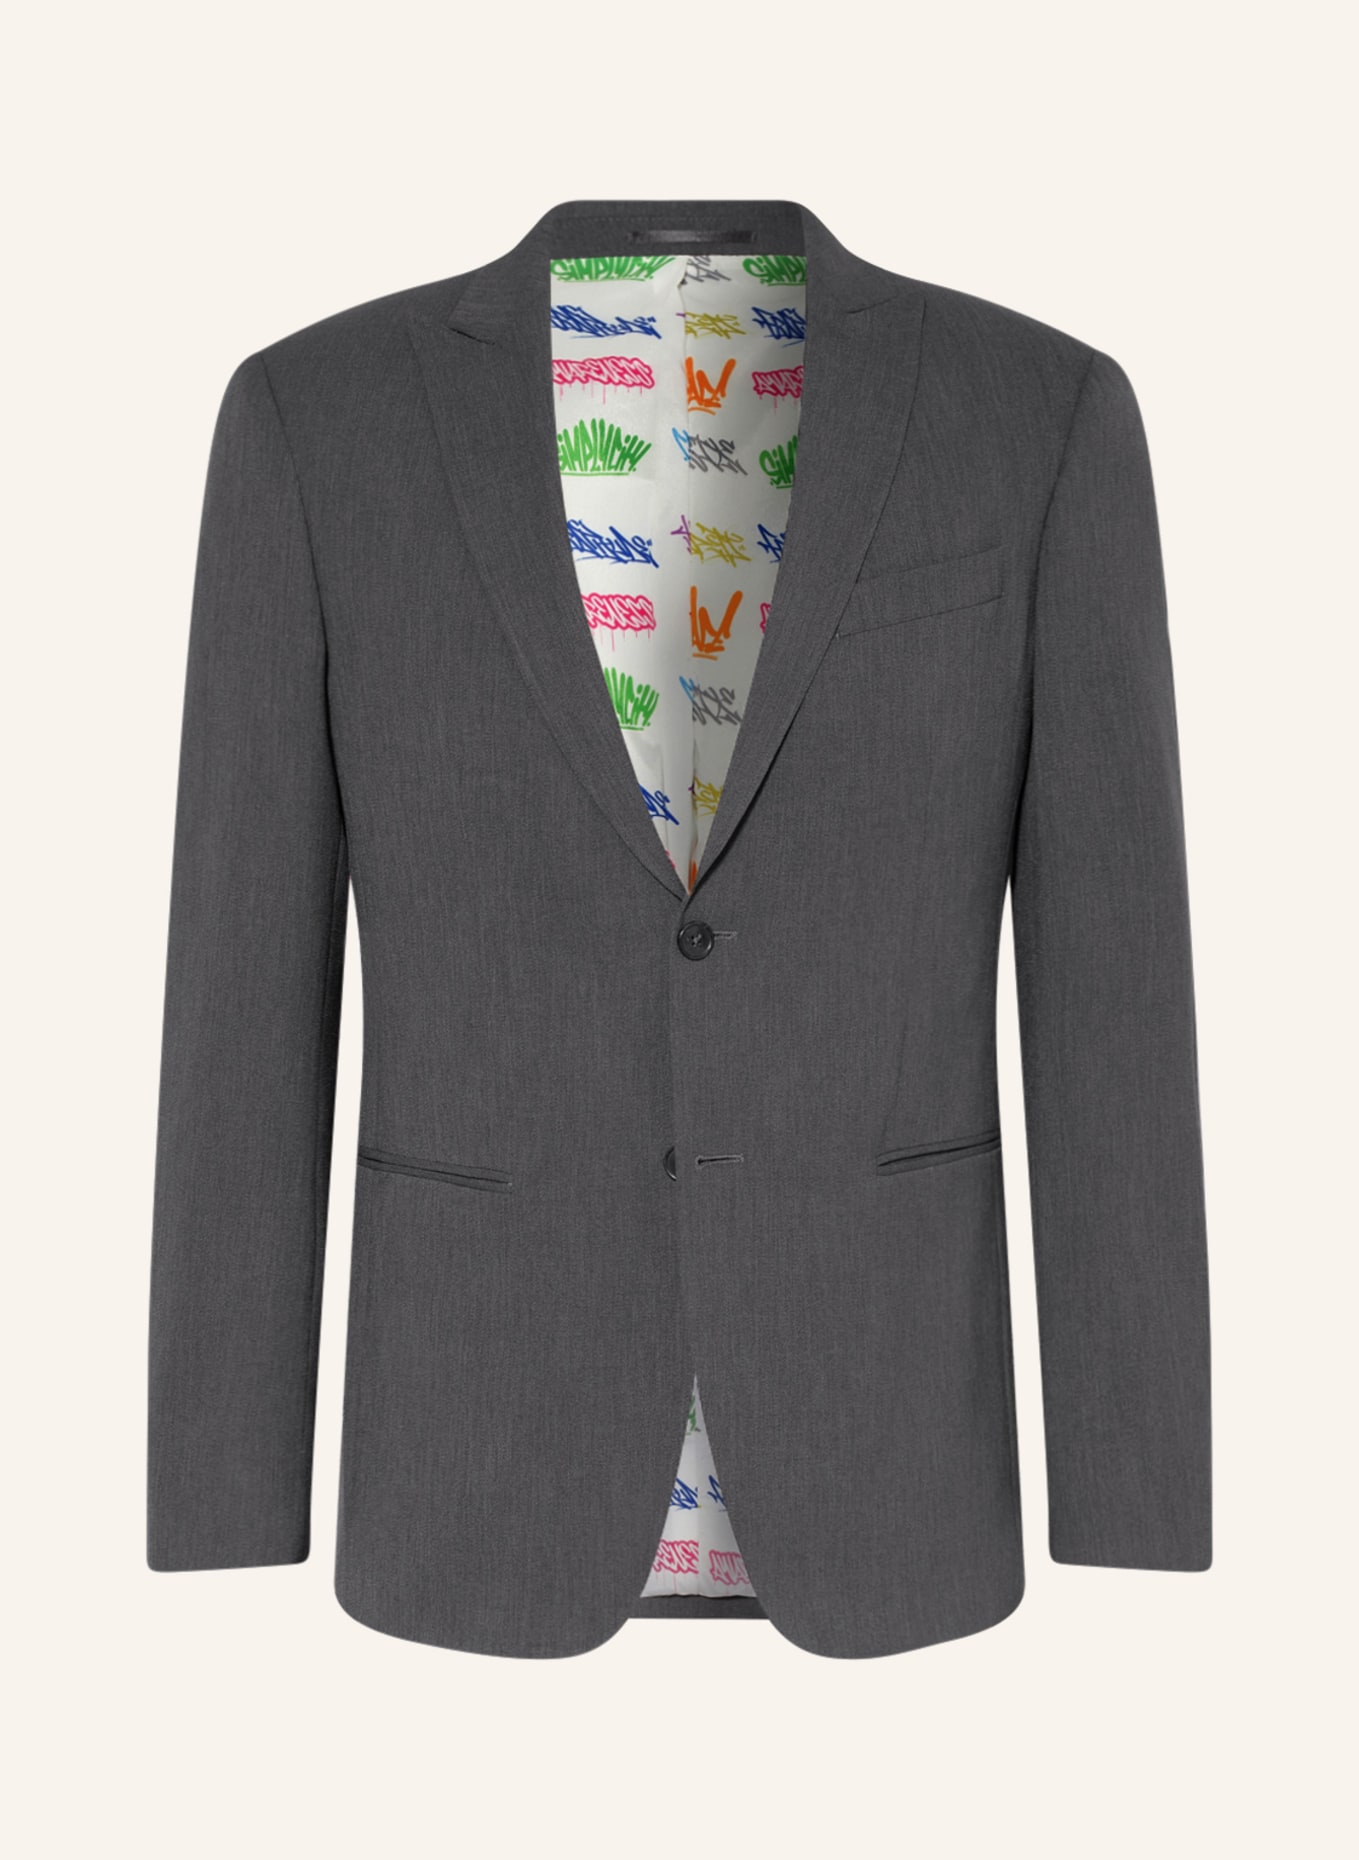 SPSR Suit jacket extra slim fit , Color: DARK GRAY (Image 1)